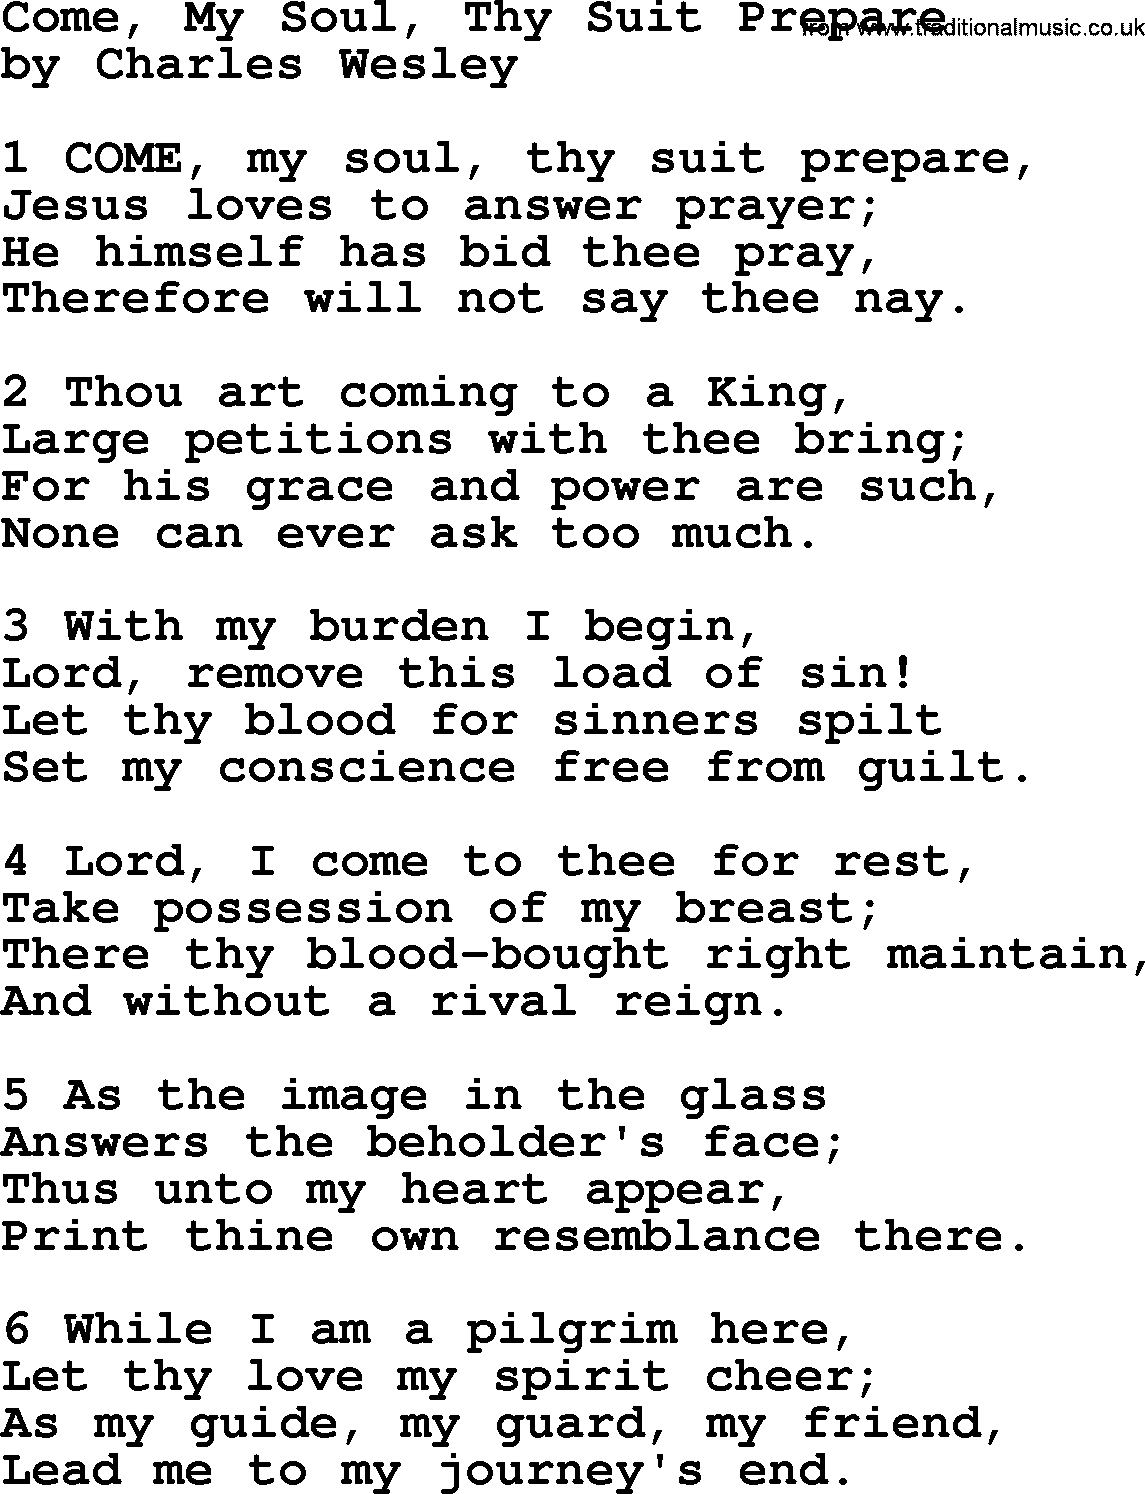 Charles Wesley hymn: Come, My Soul, Thy Suit Prepare, lyrics